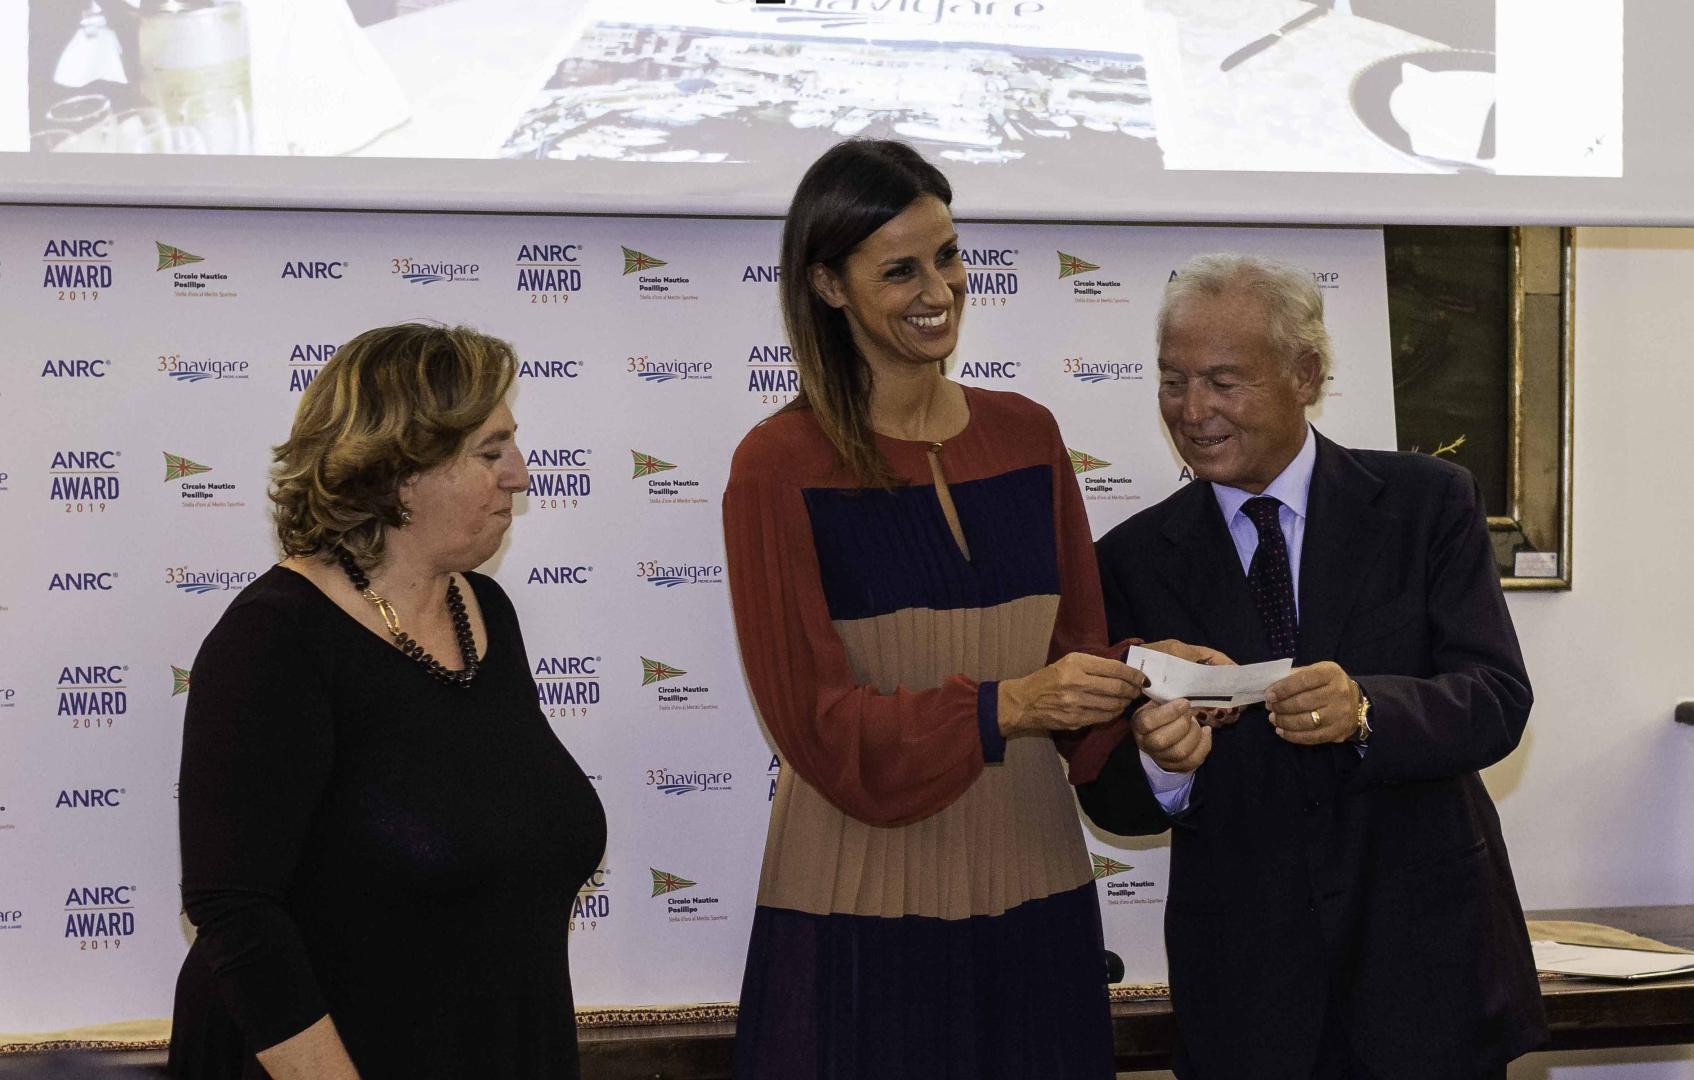 Afina, presieduta da Gennaro Amato, dona alla Fondazione Santobono Pausilipon un consistente assegno a supporto della ricerca